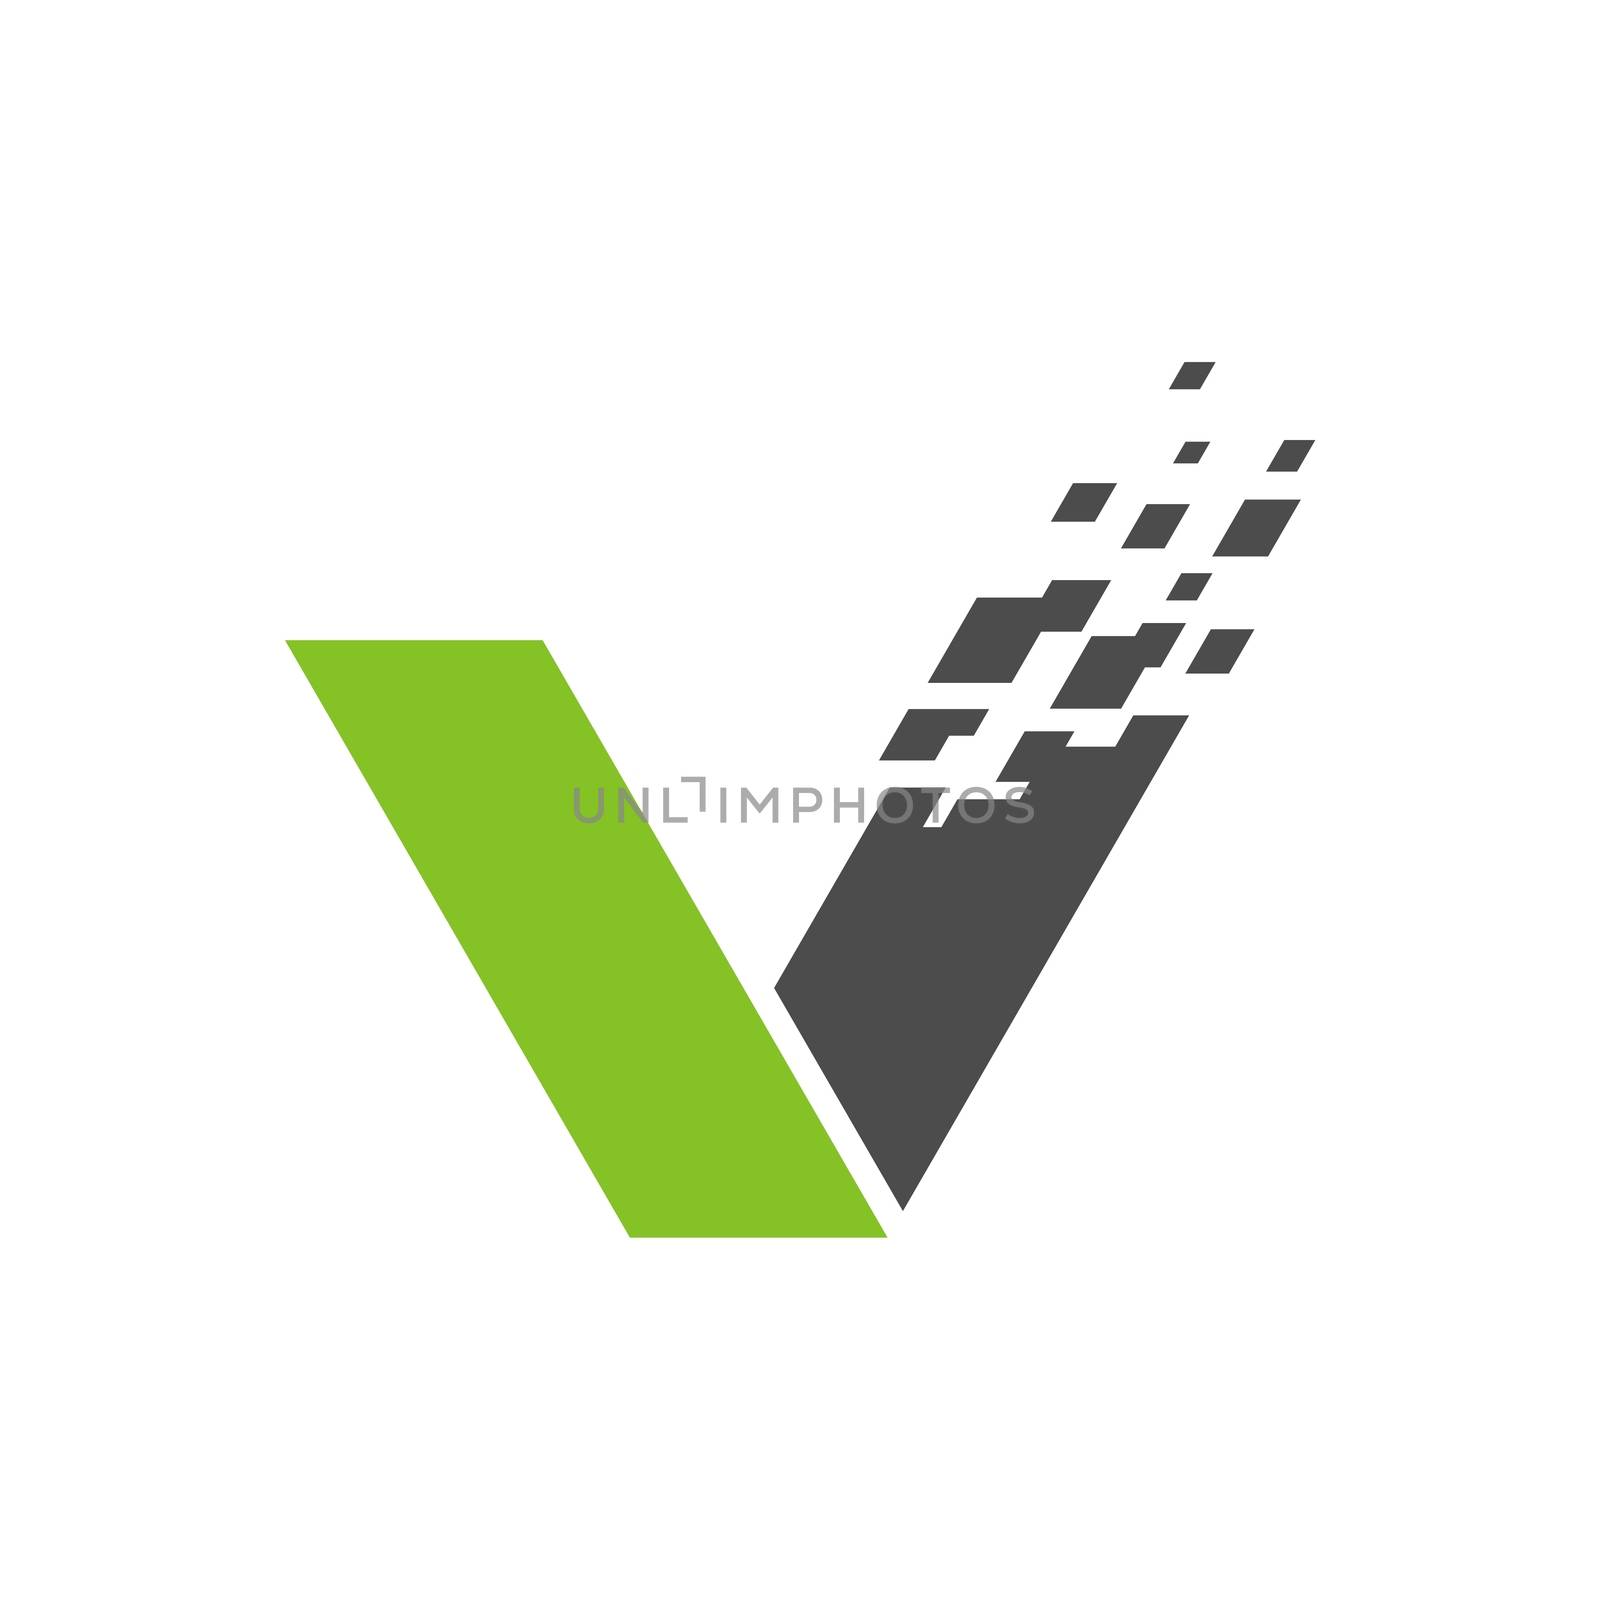 V Letter vector Logo Template Illustration Design. Vector EPS 10.